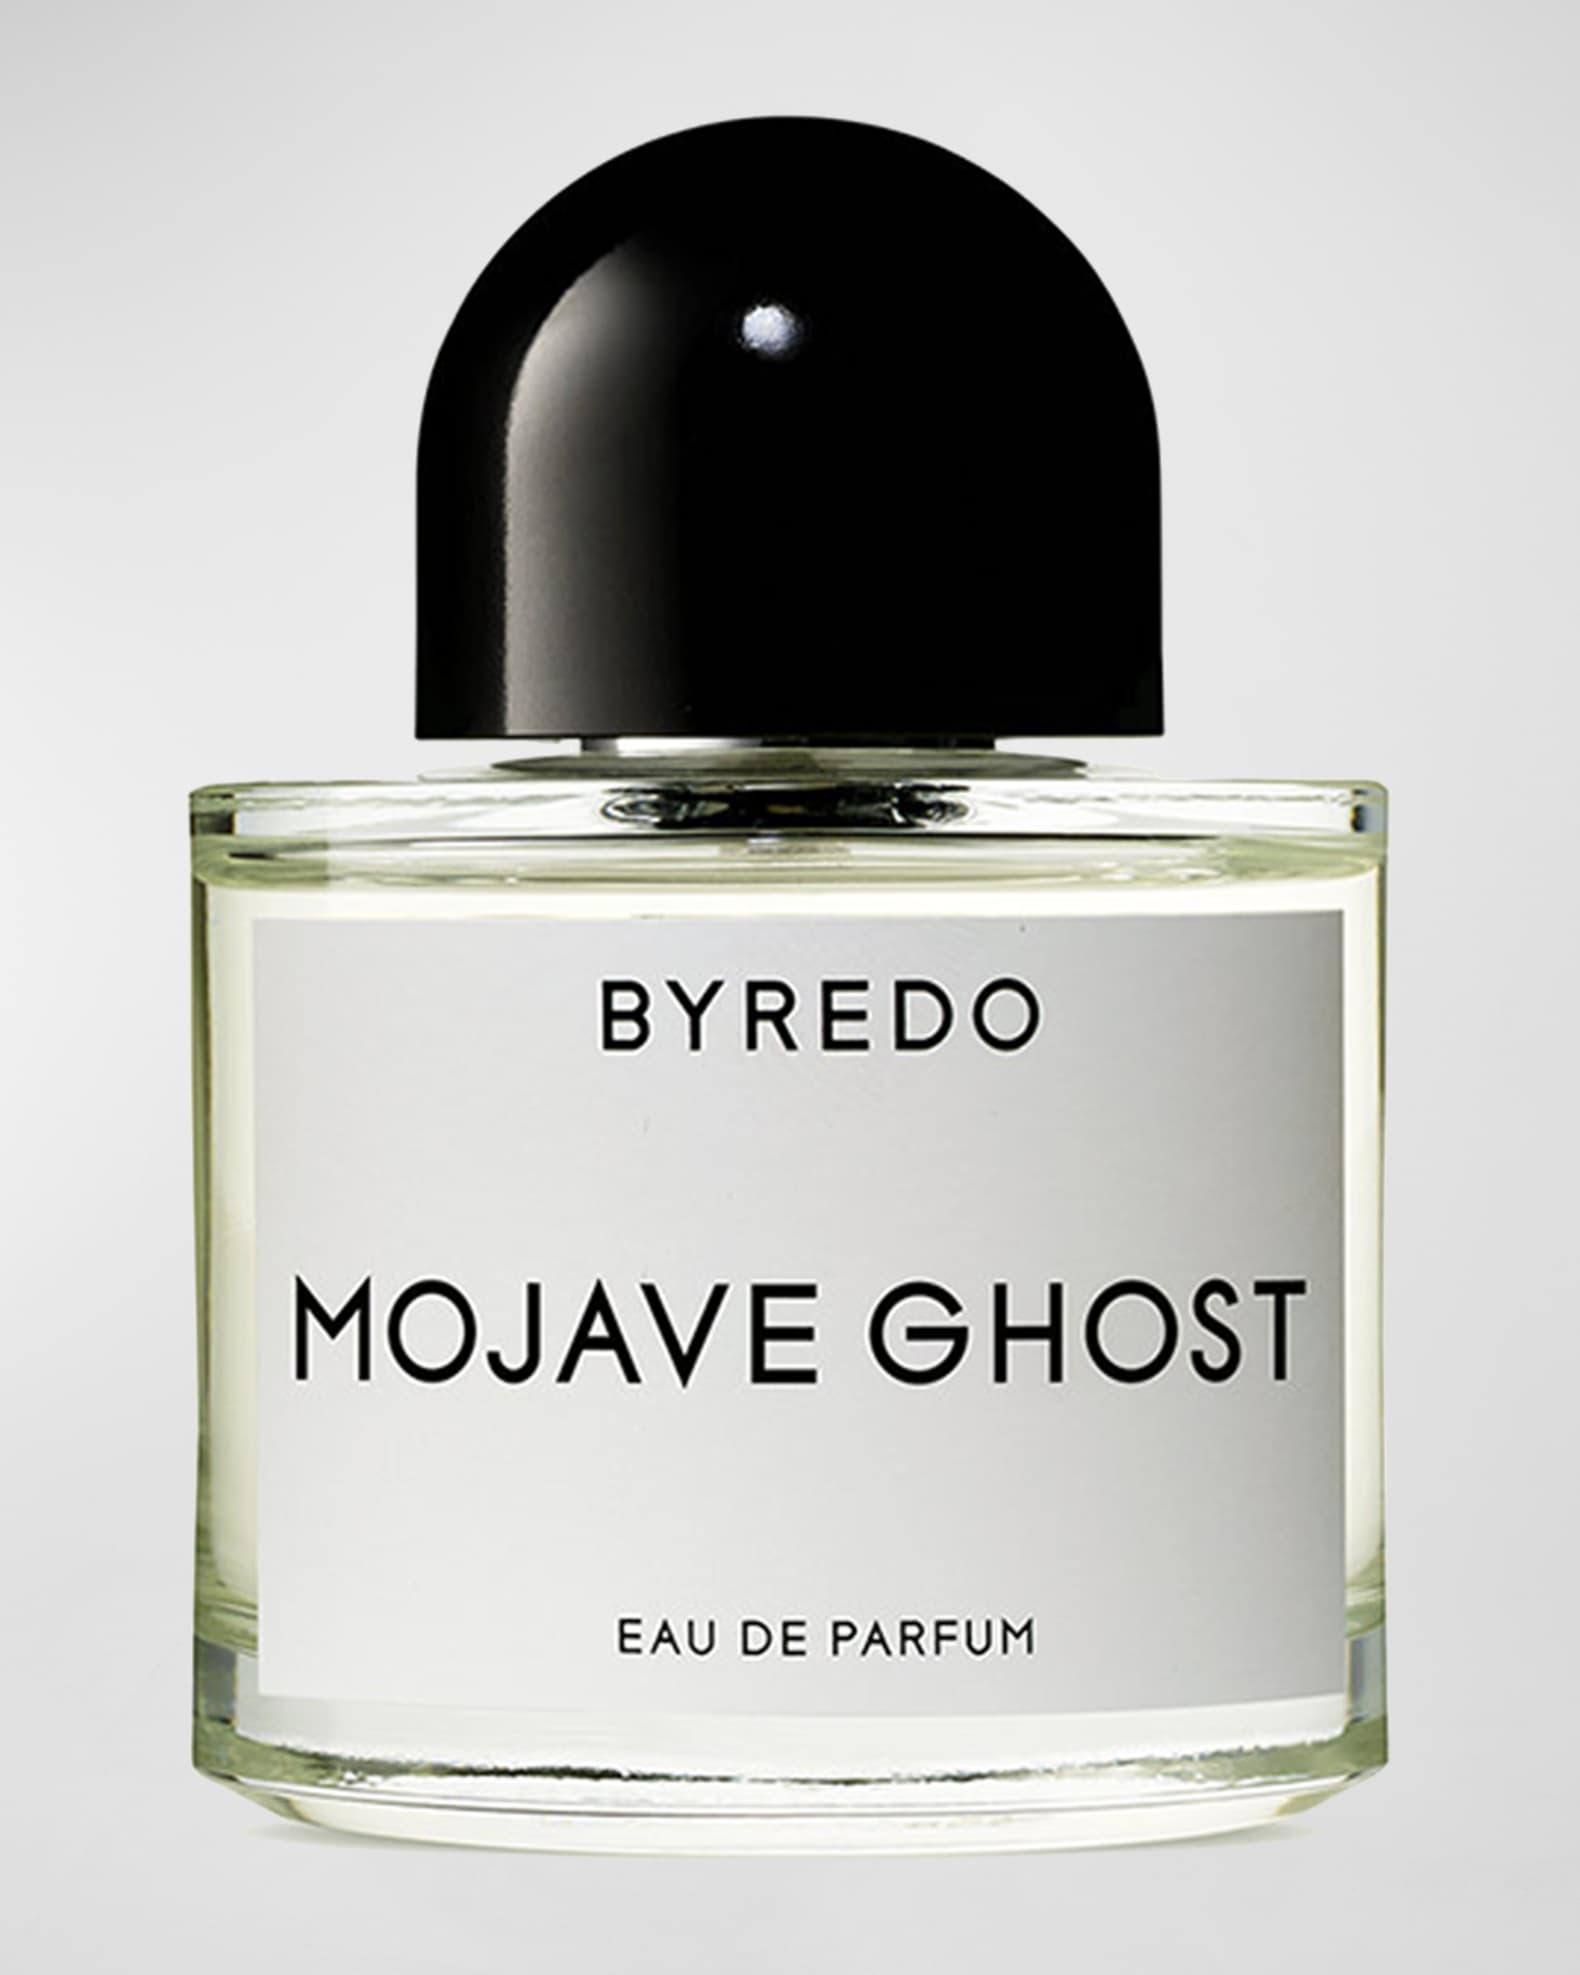 Mojave Ghost Eau de Parfum, 1.7 oz.